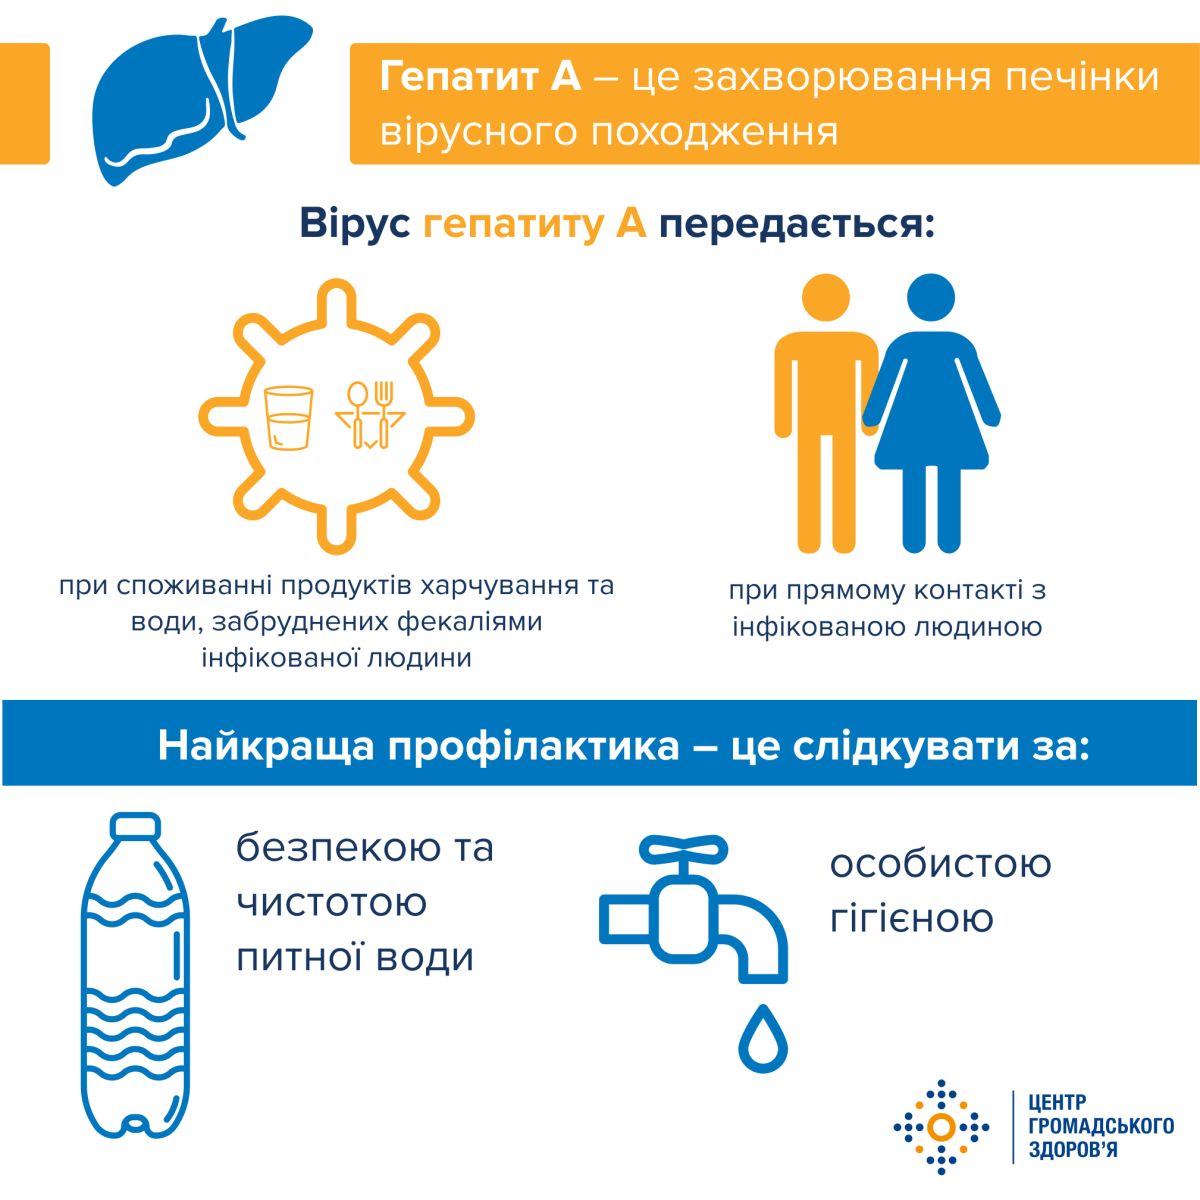 Гепатит А на Вінничині: чому спалахнув вірус і чи охопить він всю Україну